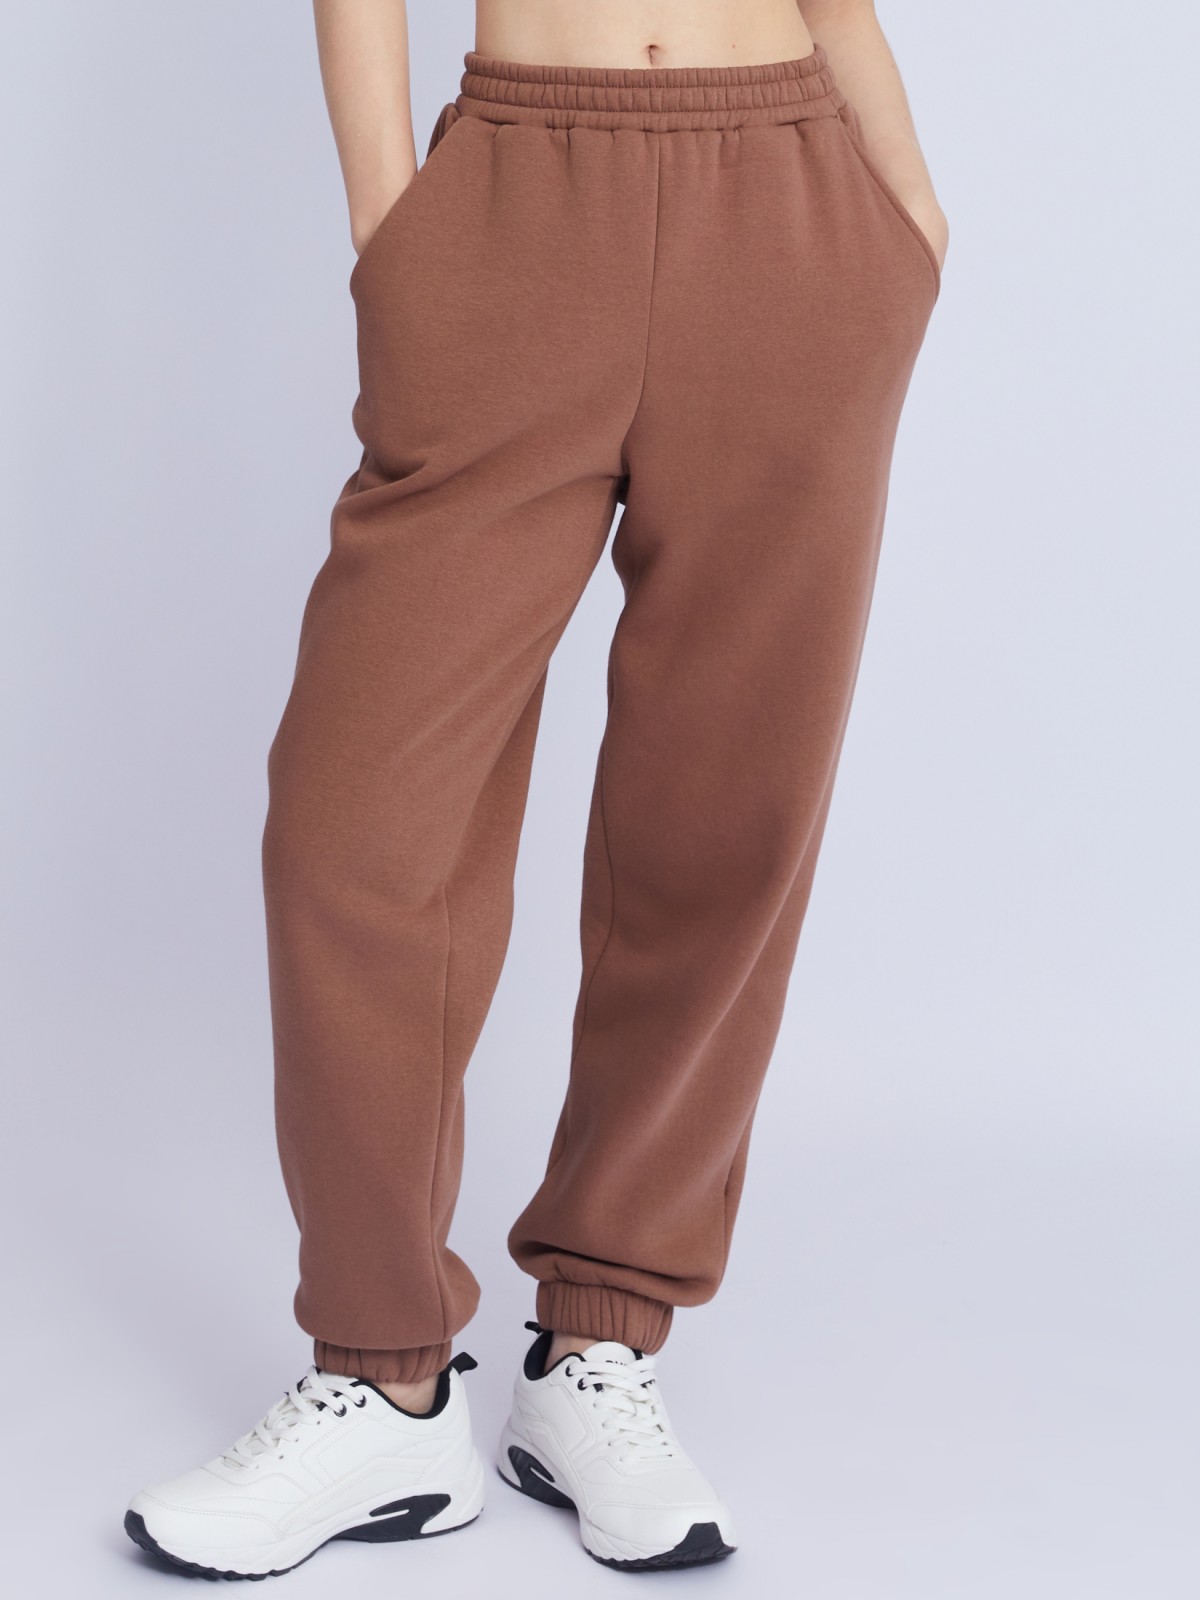 Утеплённые трикотажные брюки-джоггеры с поясом на резинке zolla 223337643022, цвет коричневый, размер XS - фото 2